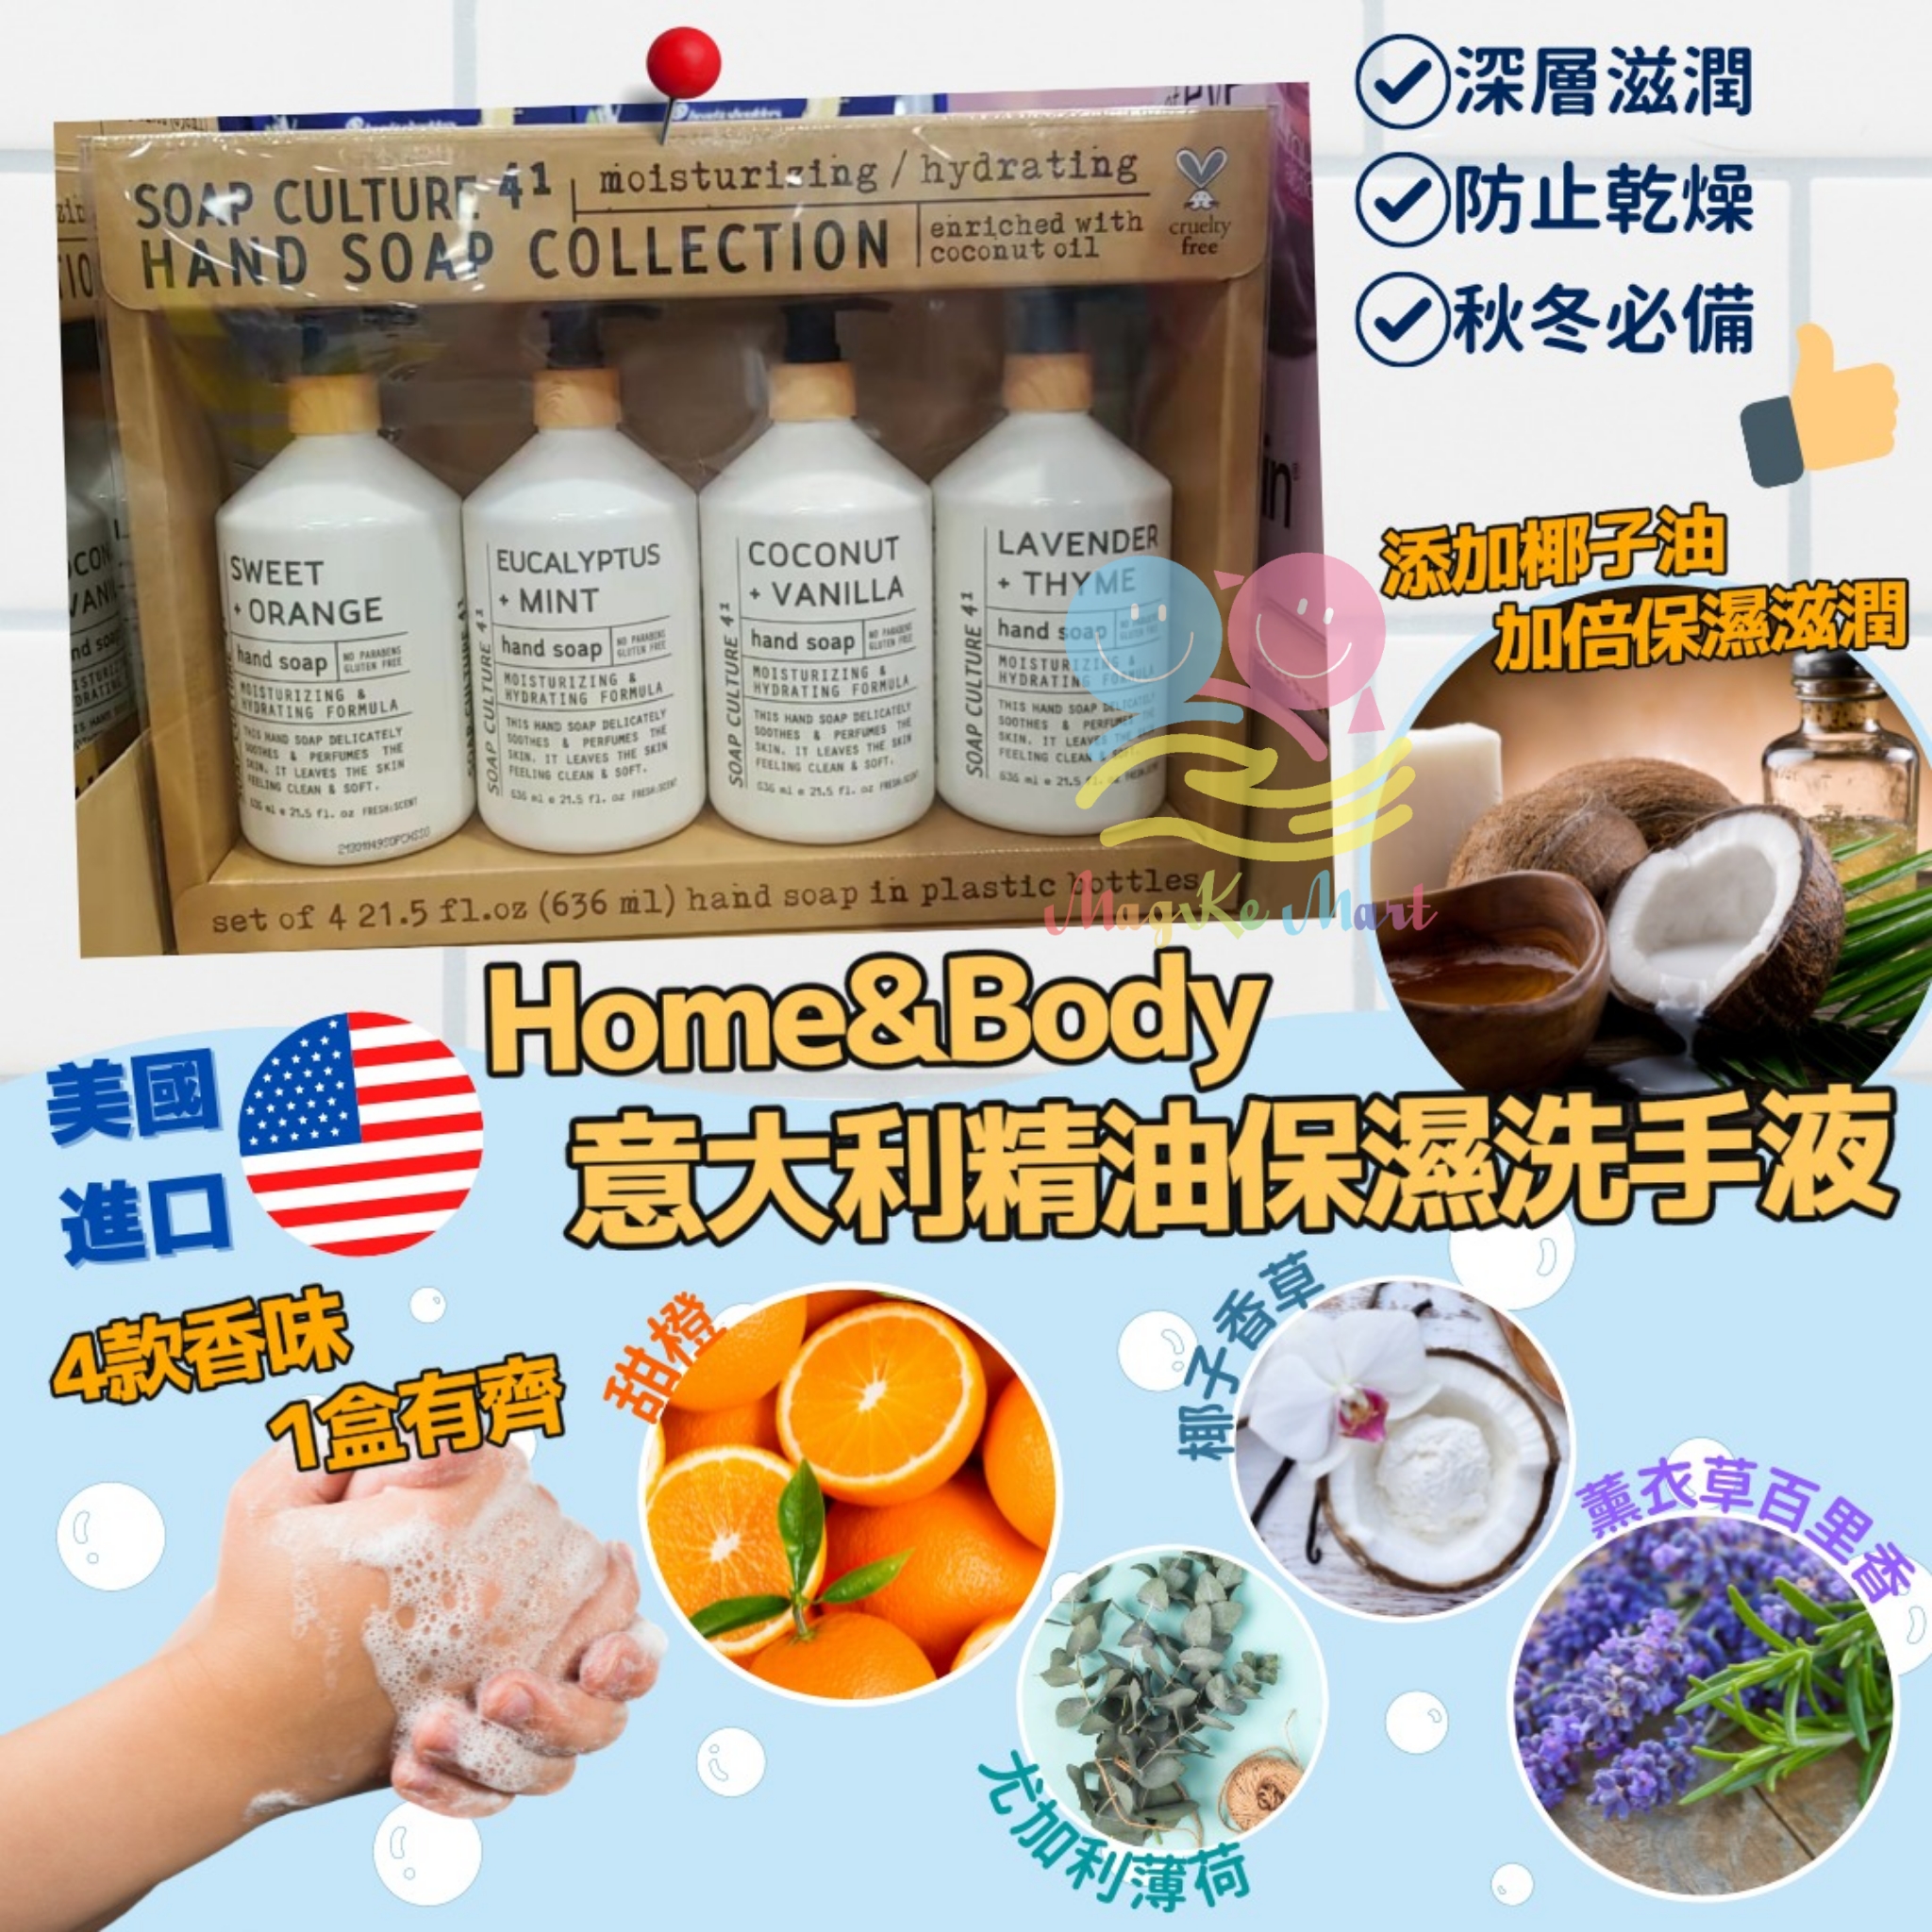 美國 Home & Body 意大利精油保濕洗手液(1套4支)